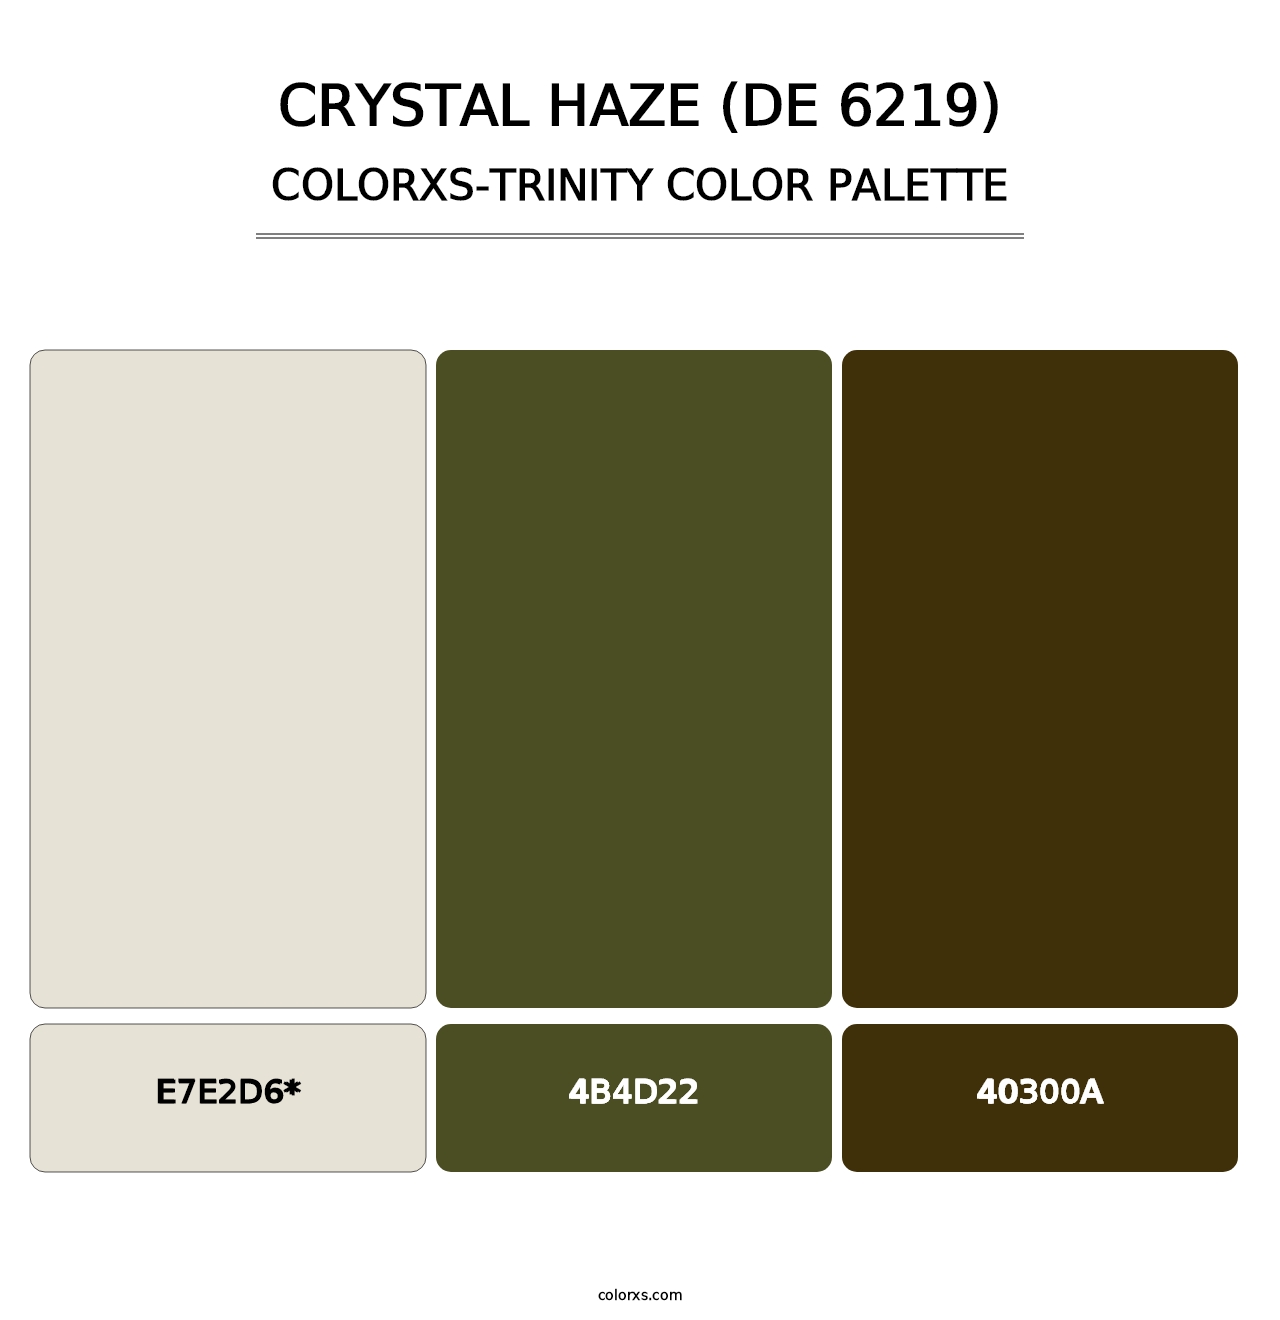 Crystal Haze (DE 6219) - Colorxs Trinity Palette